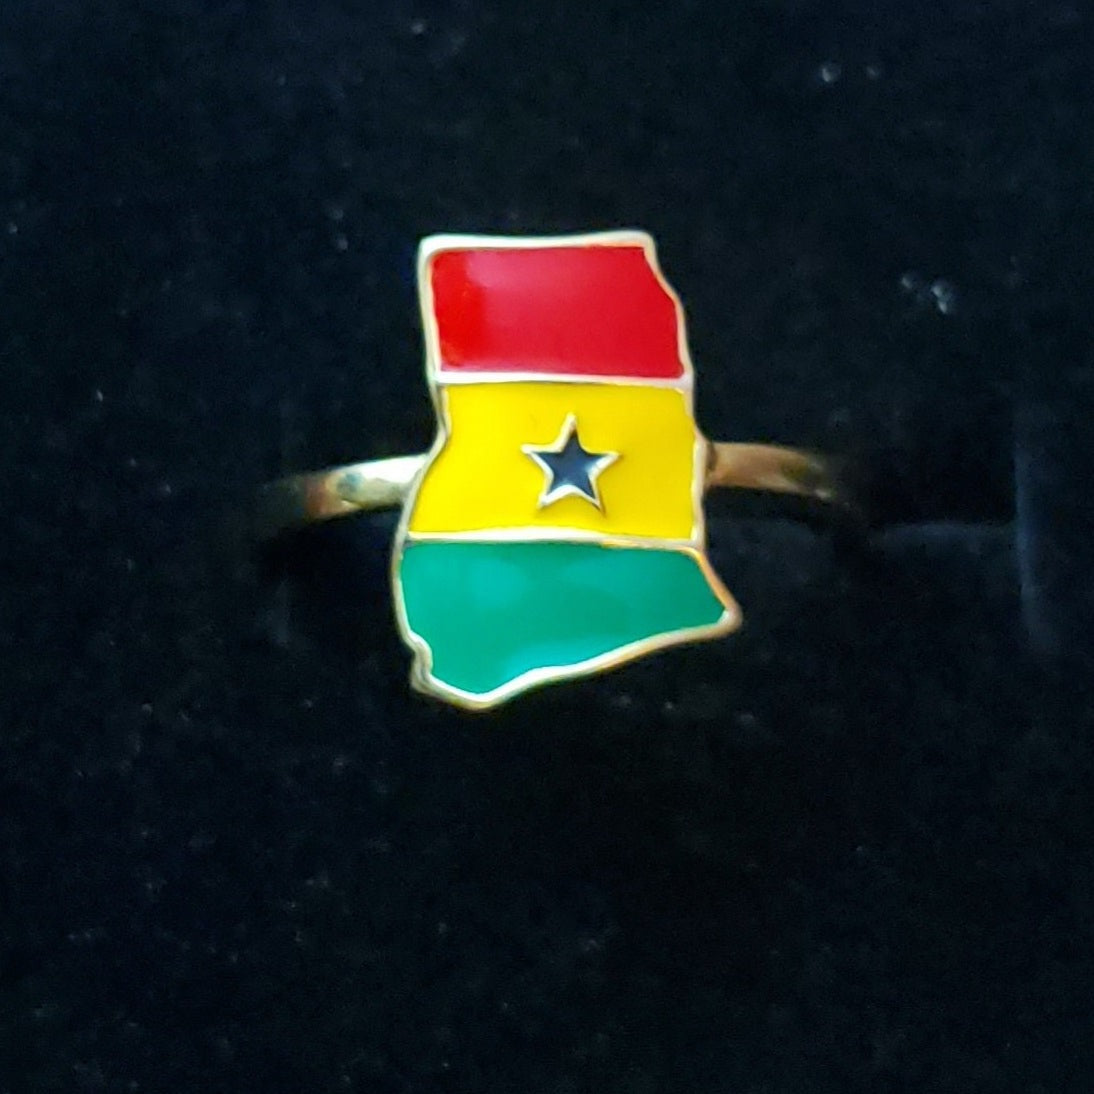 Ghana Ring